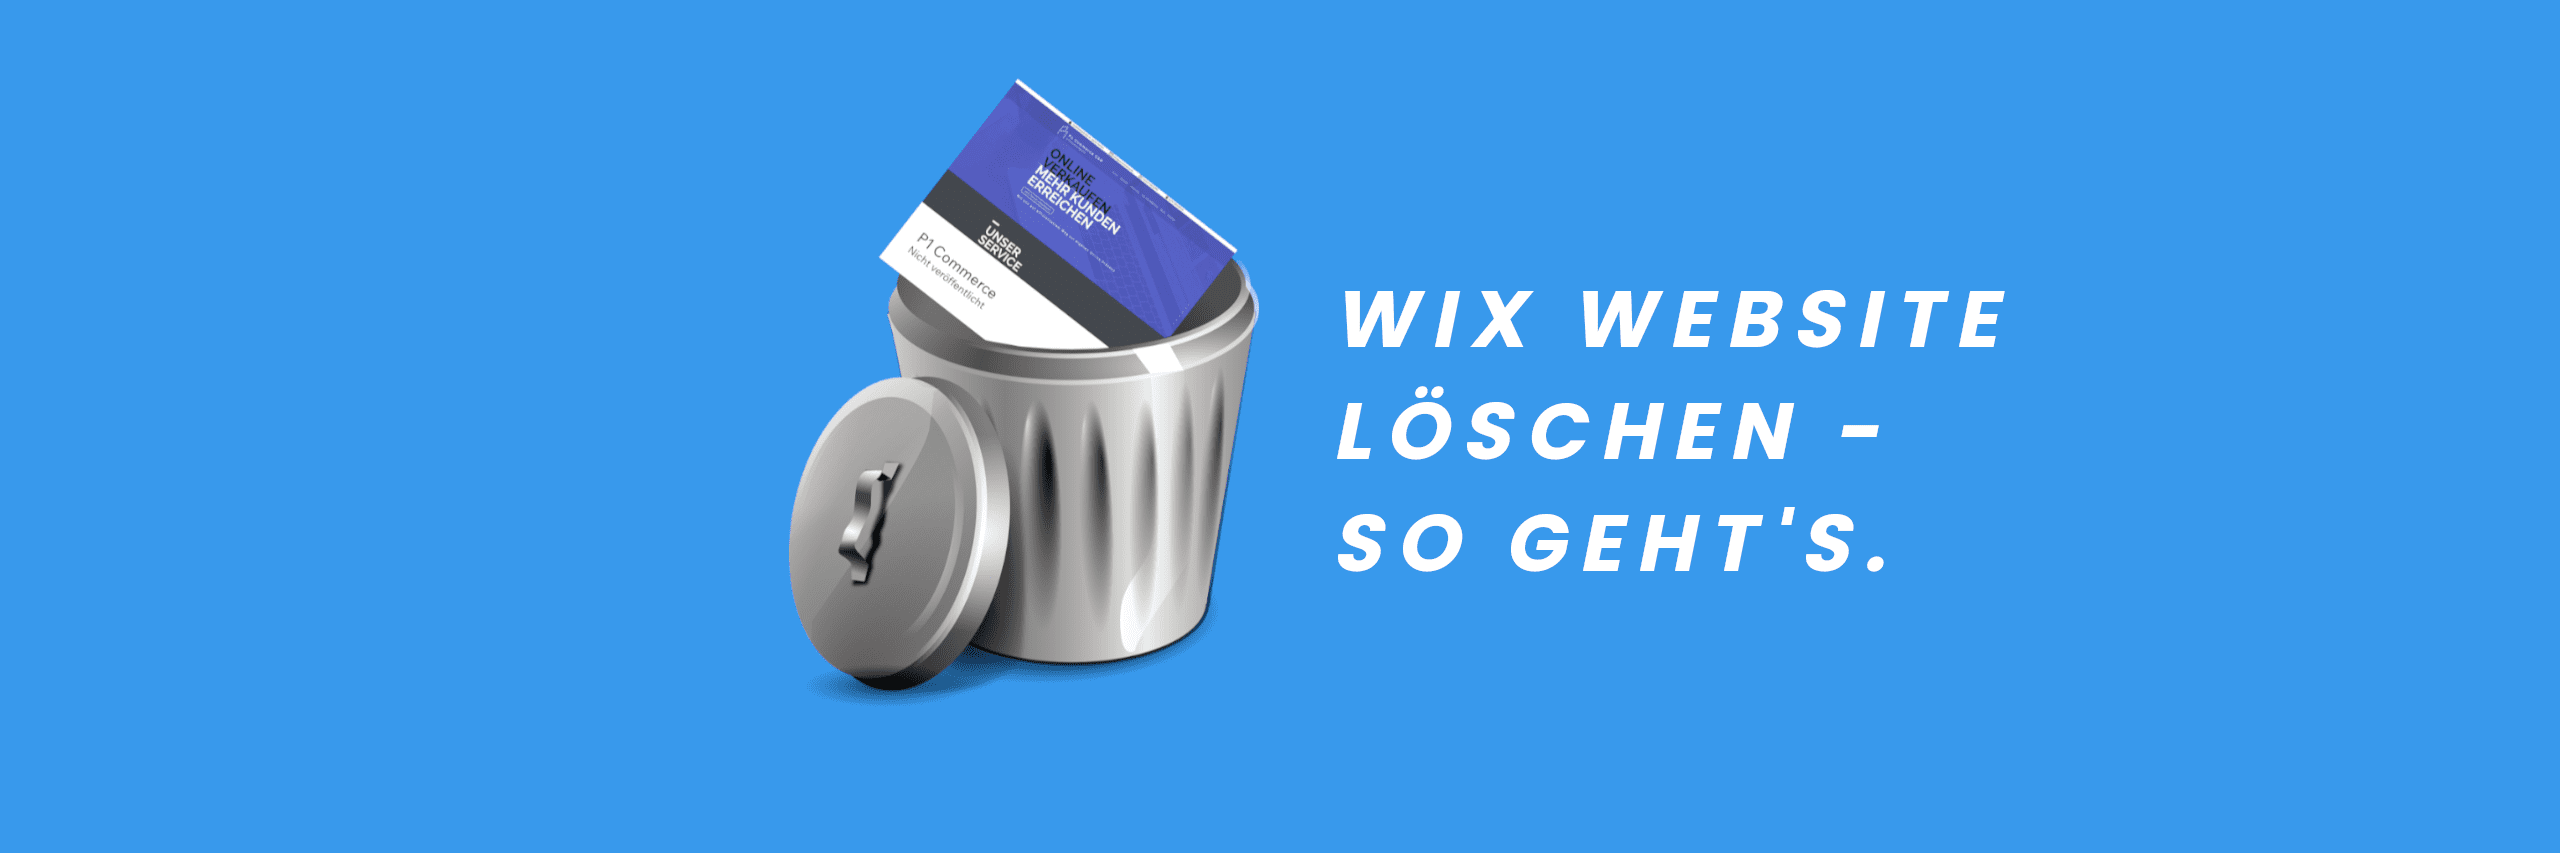 Wix website loeschen p1 commerce